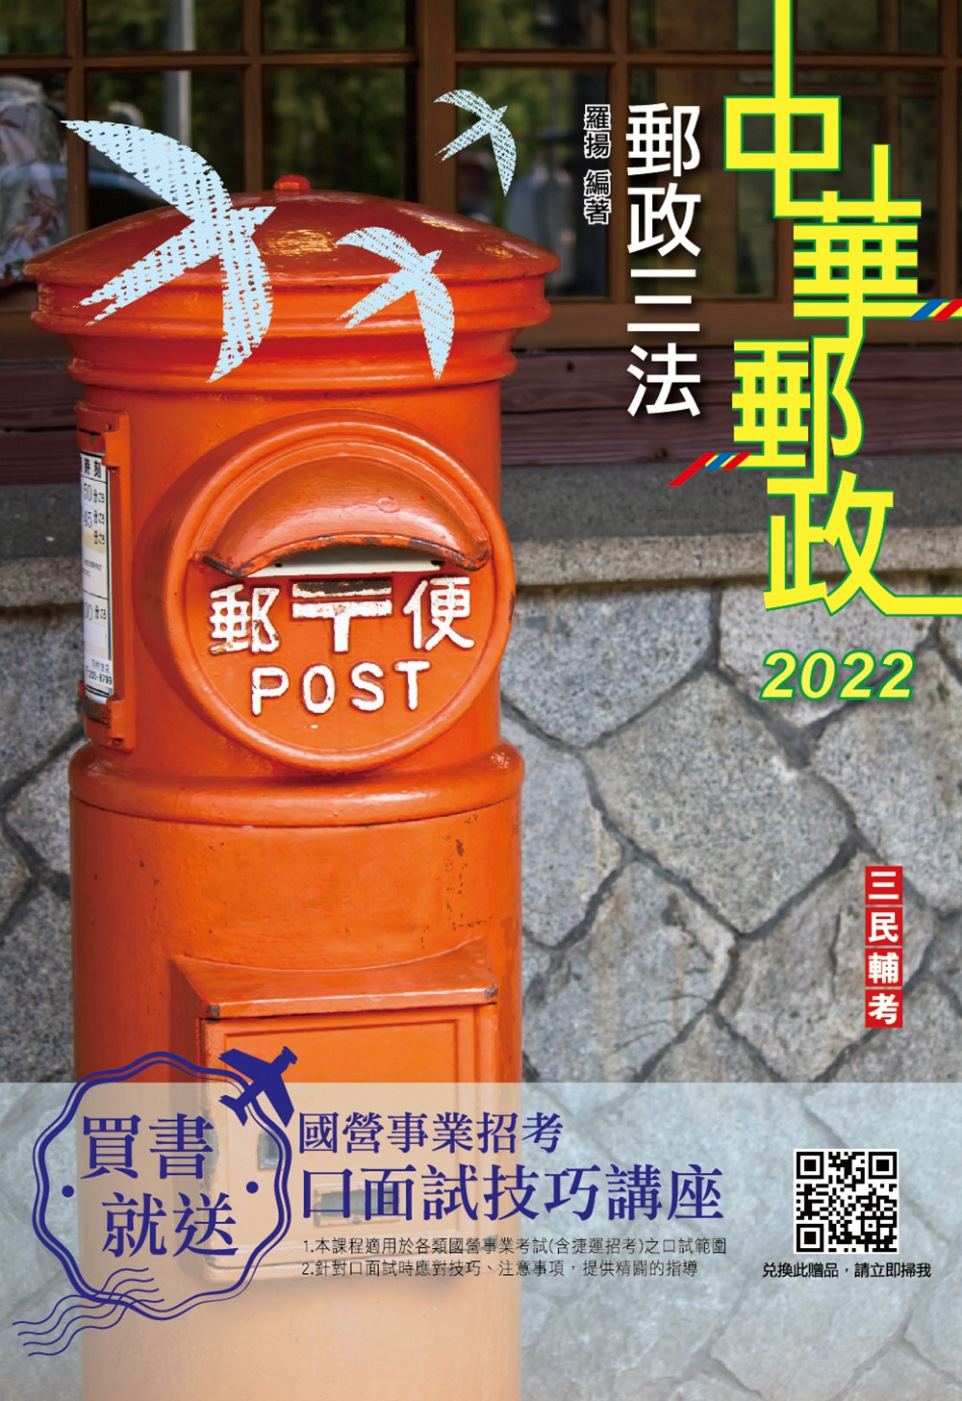 2022郵政三法(中華郵政適用)(贈國營事業口面試技巧講座雲端課程)(五版)